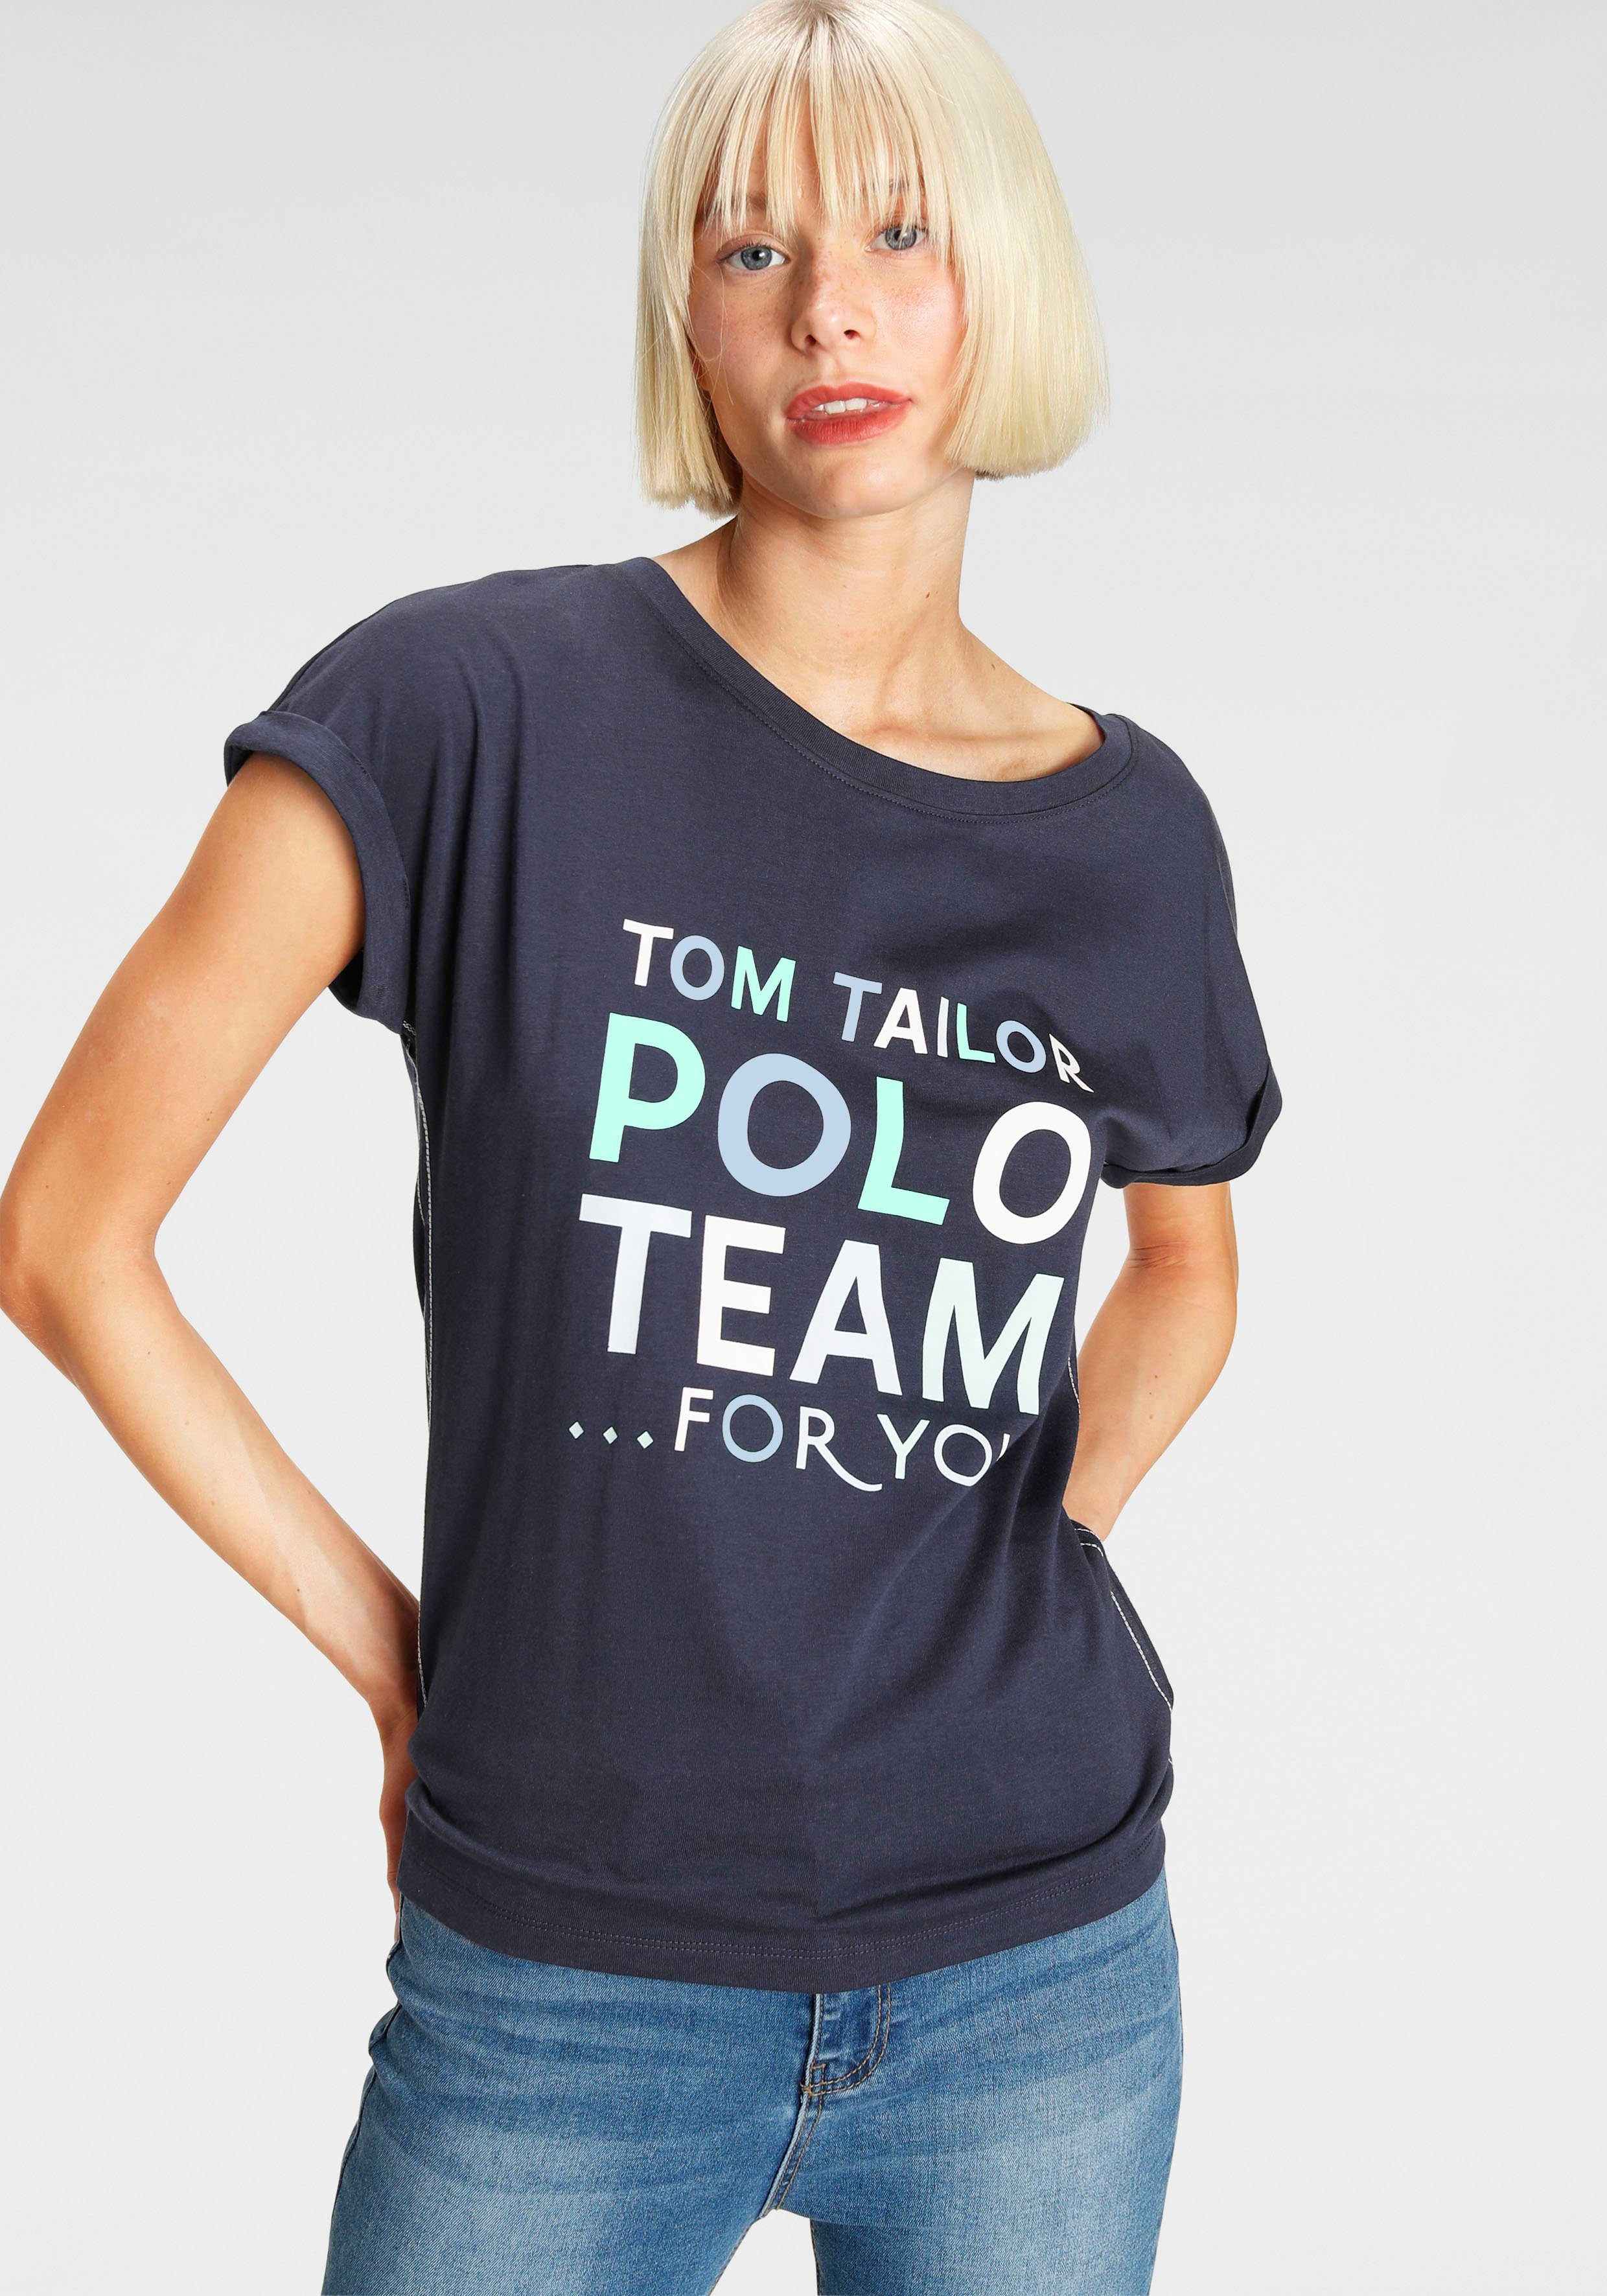 TOM TAILOR Polo Team Print-Shirt großem farbenfrohen Logo-Print